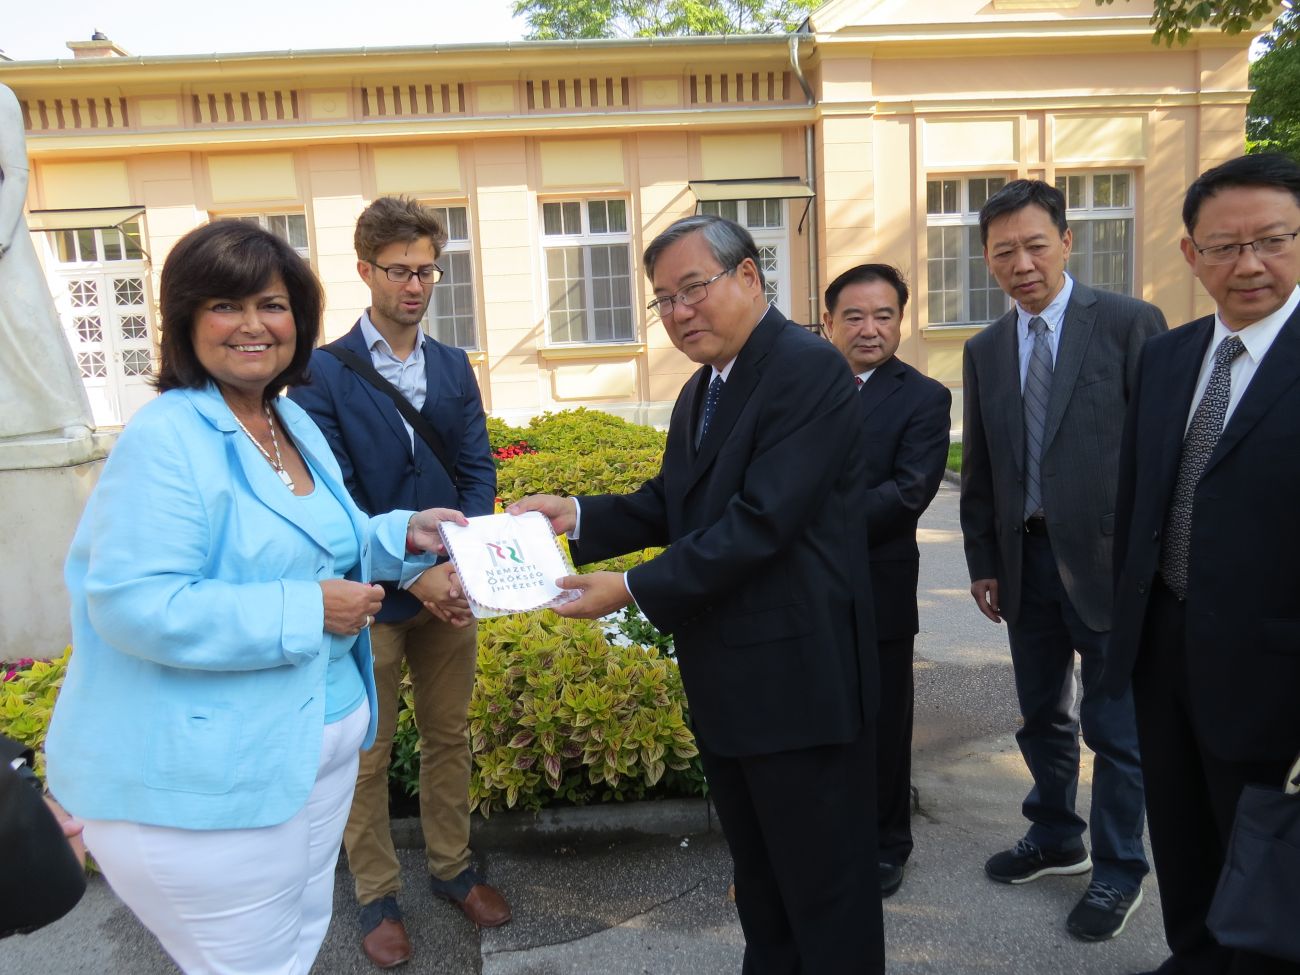 Kínai delegációt fogadott a Nemzeti Örökség Intézete